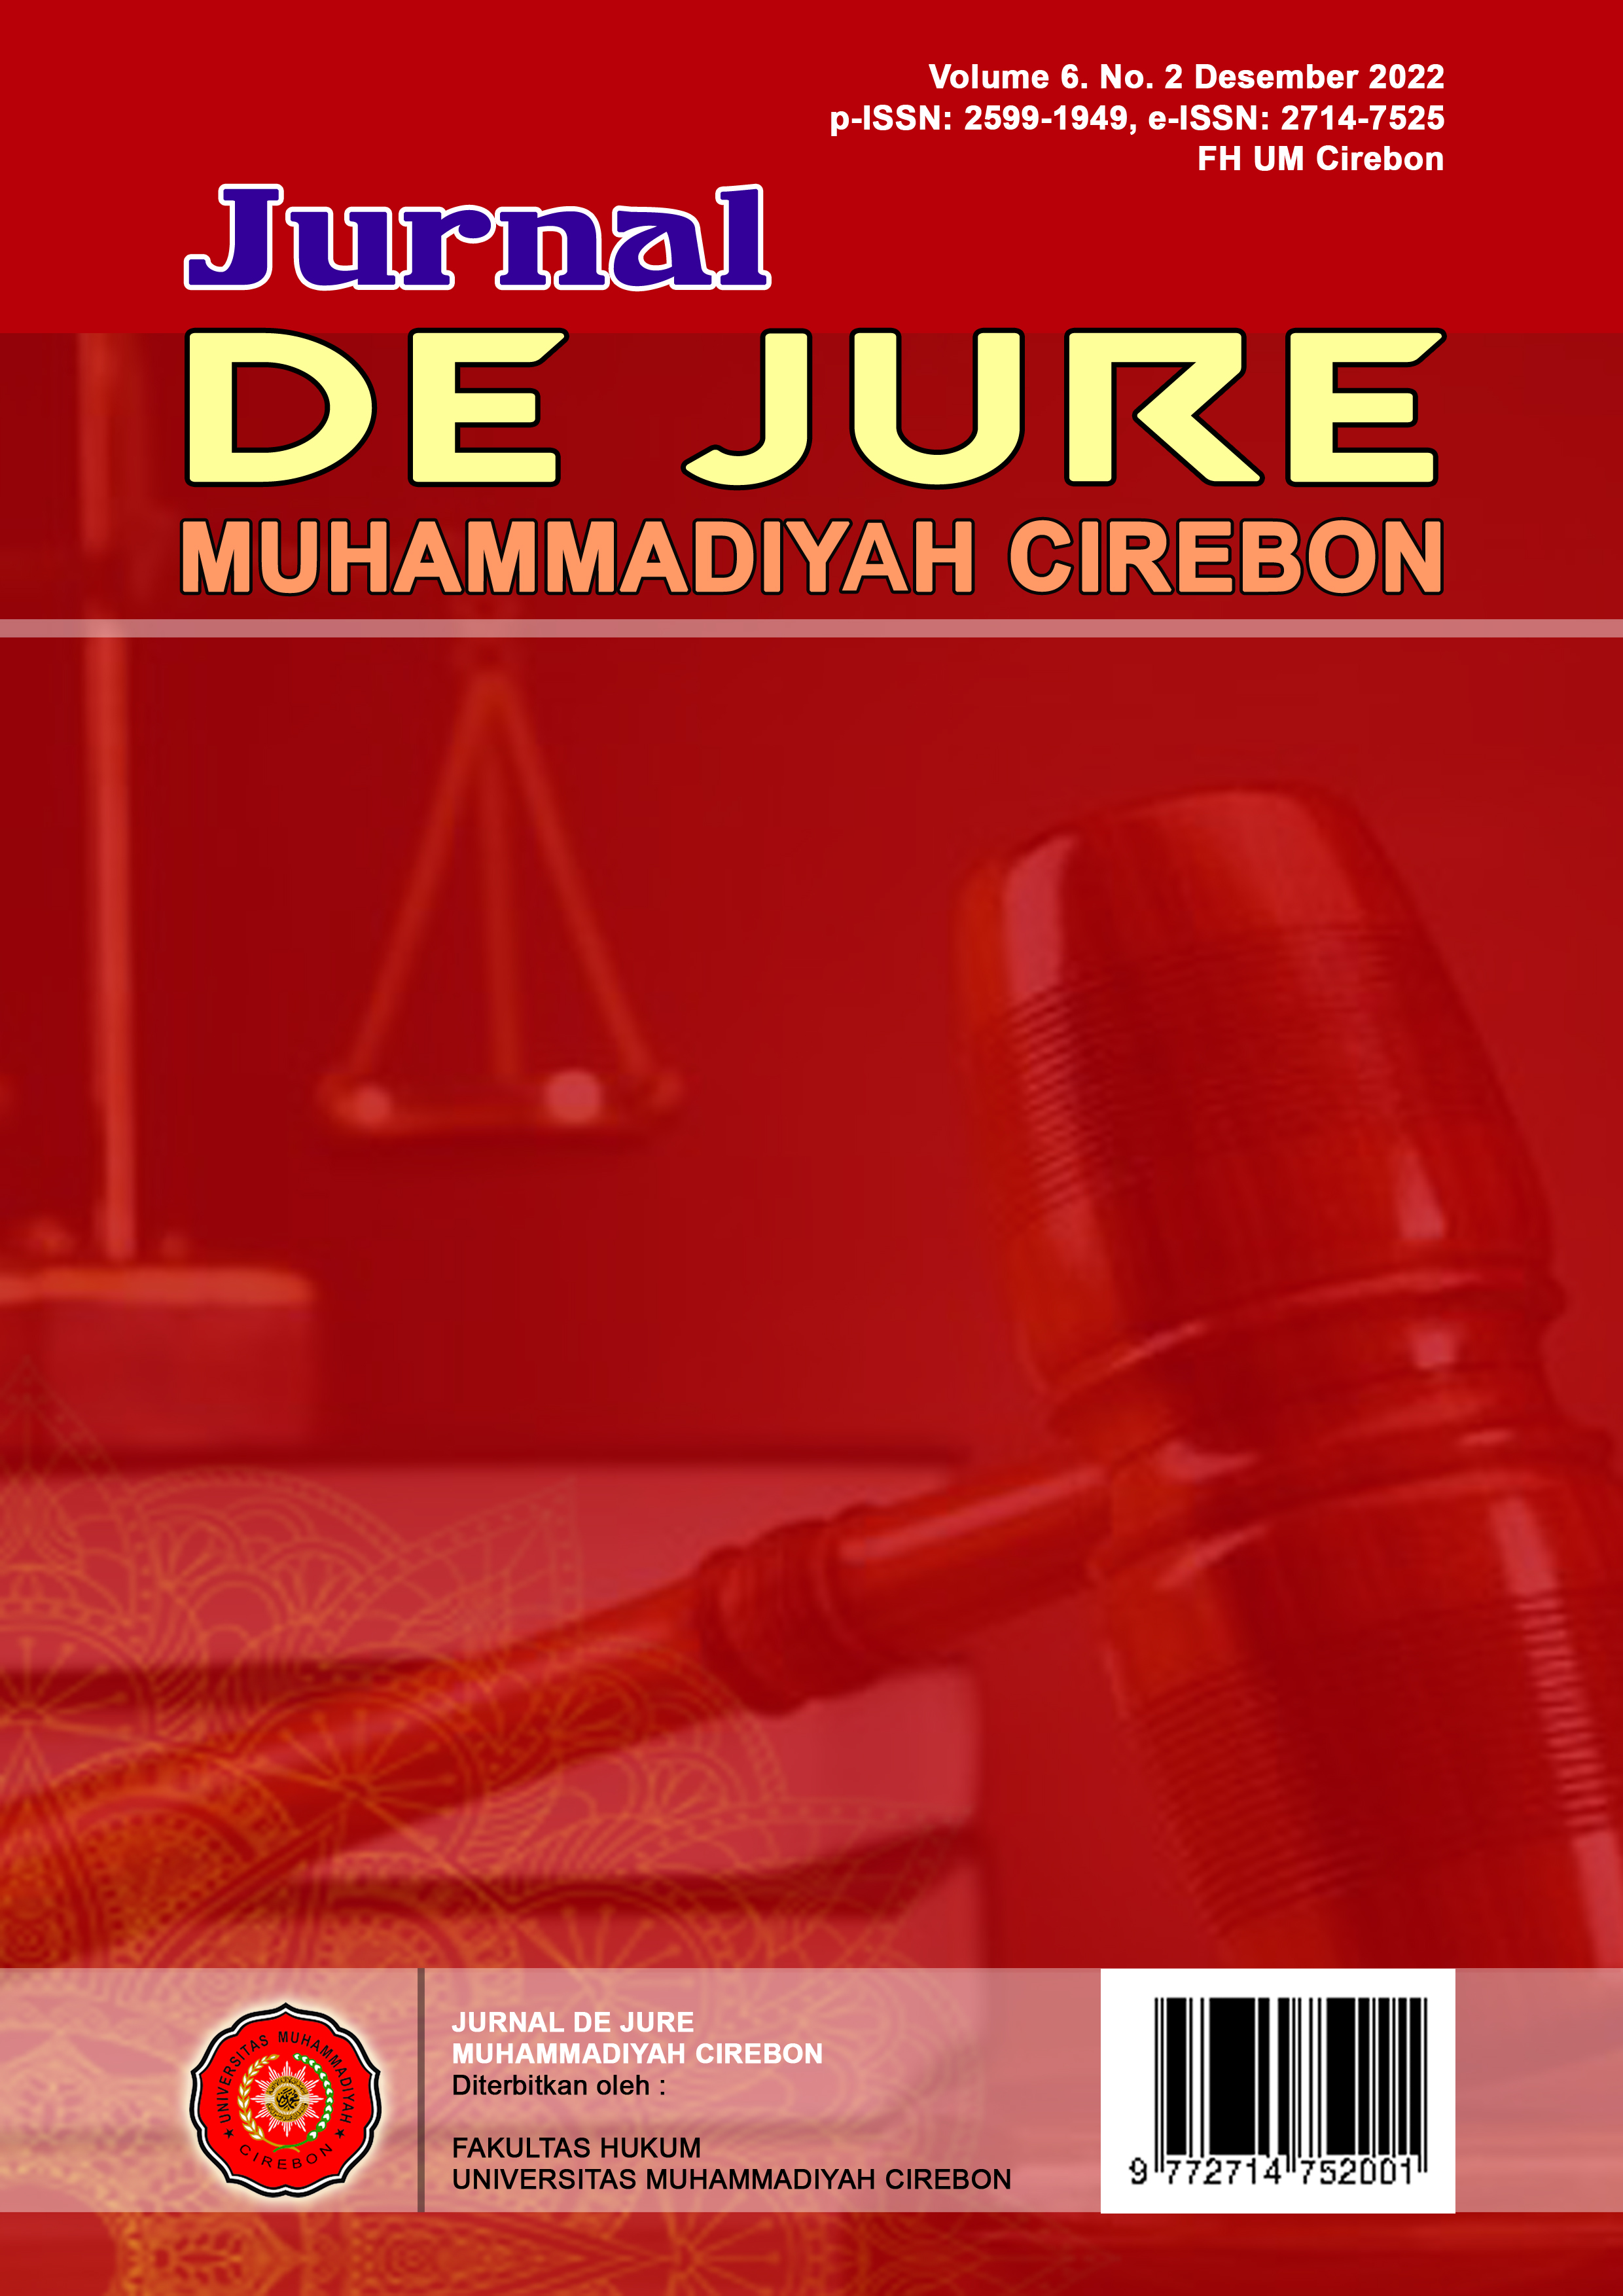 					Lihat Vol 6 No 2 (2022): De Jure Muhammadiyah Cirebon (DJMC)
				